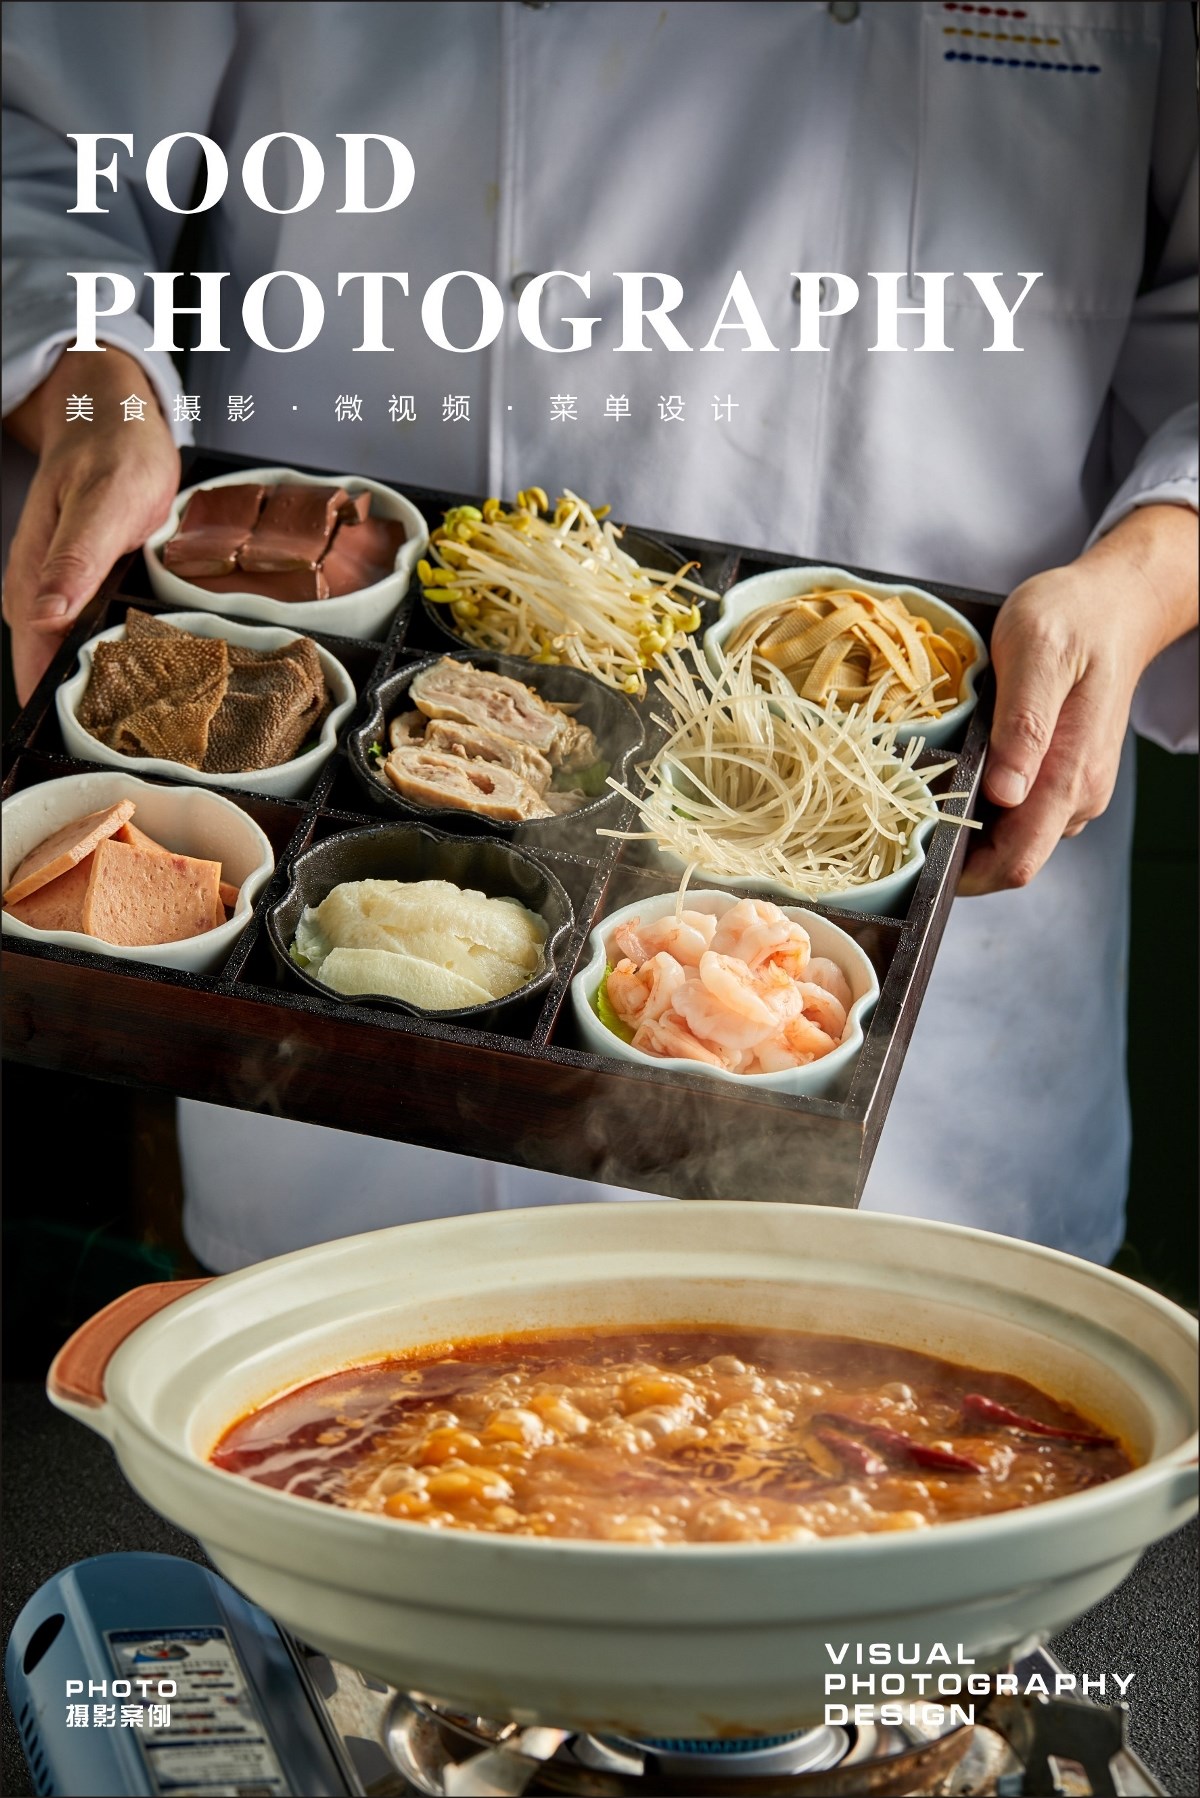 武汉美食摄影|美团首图|菜单拍摄|中餐摄影